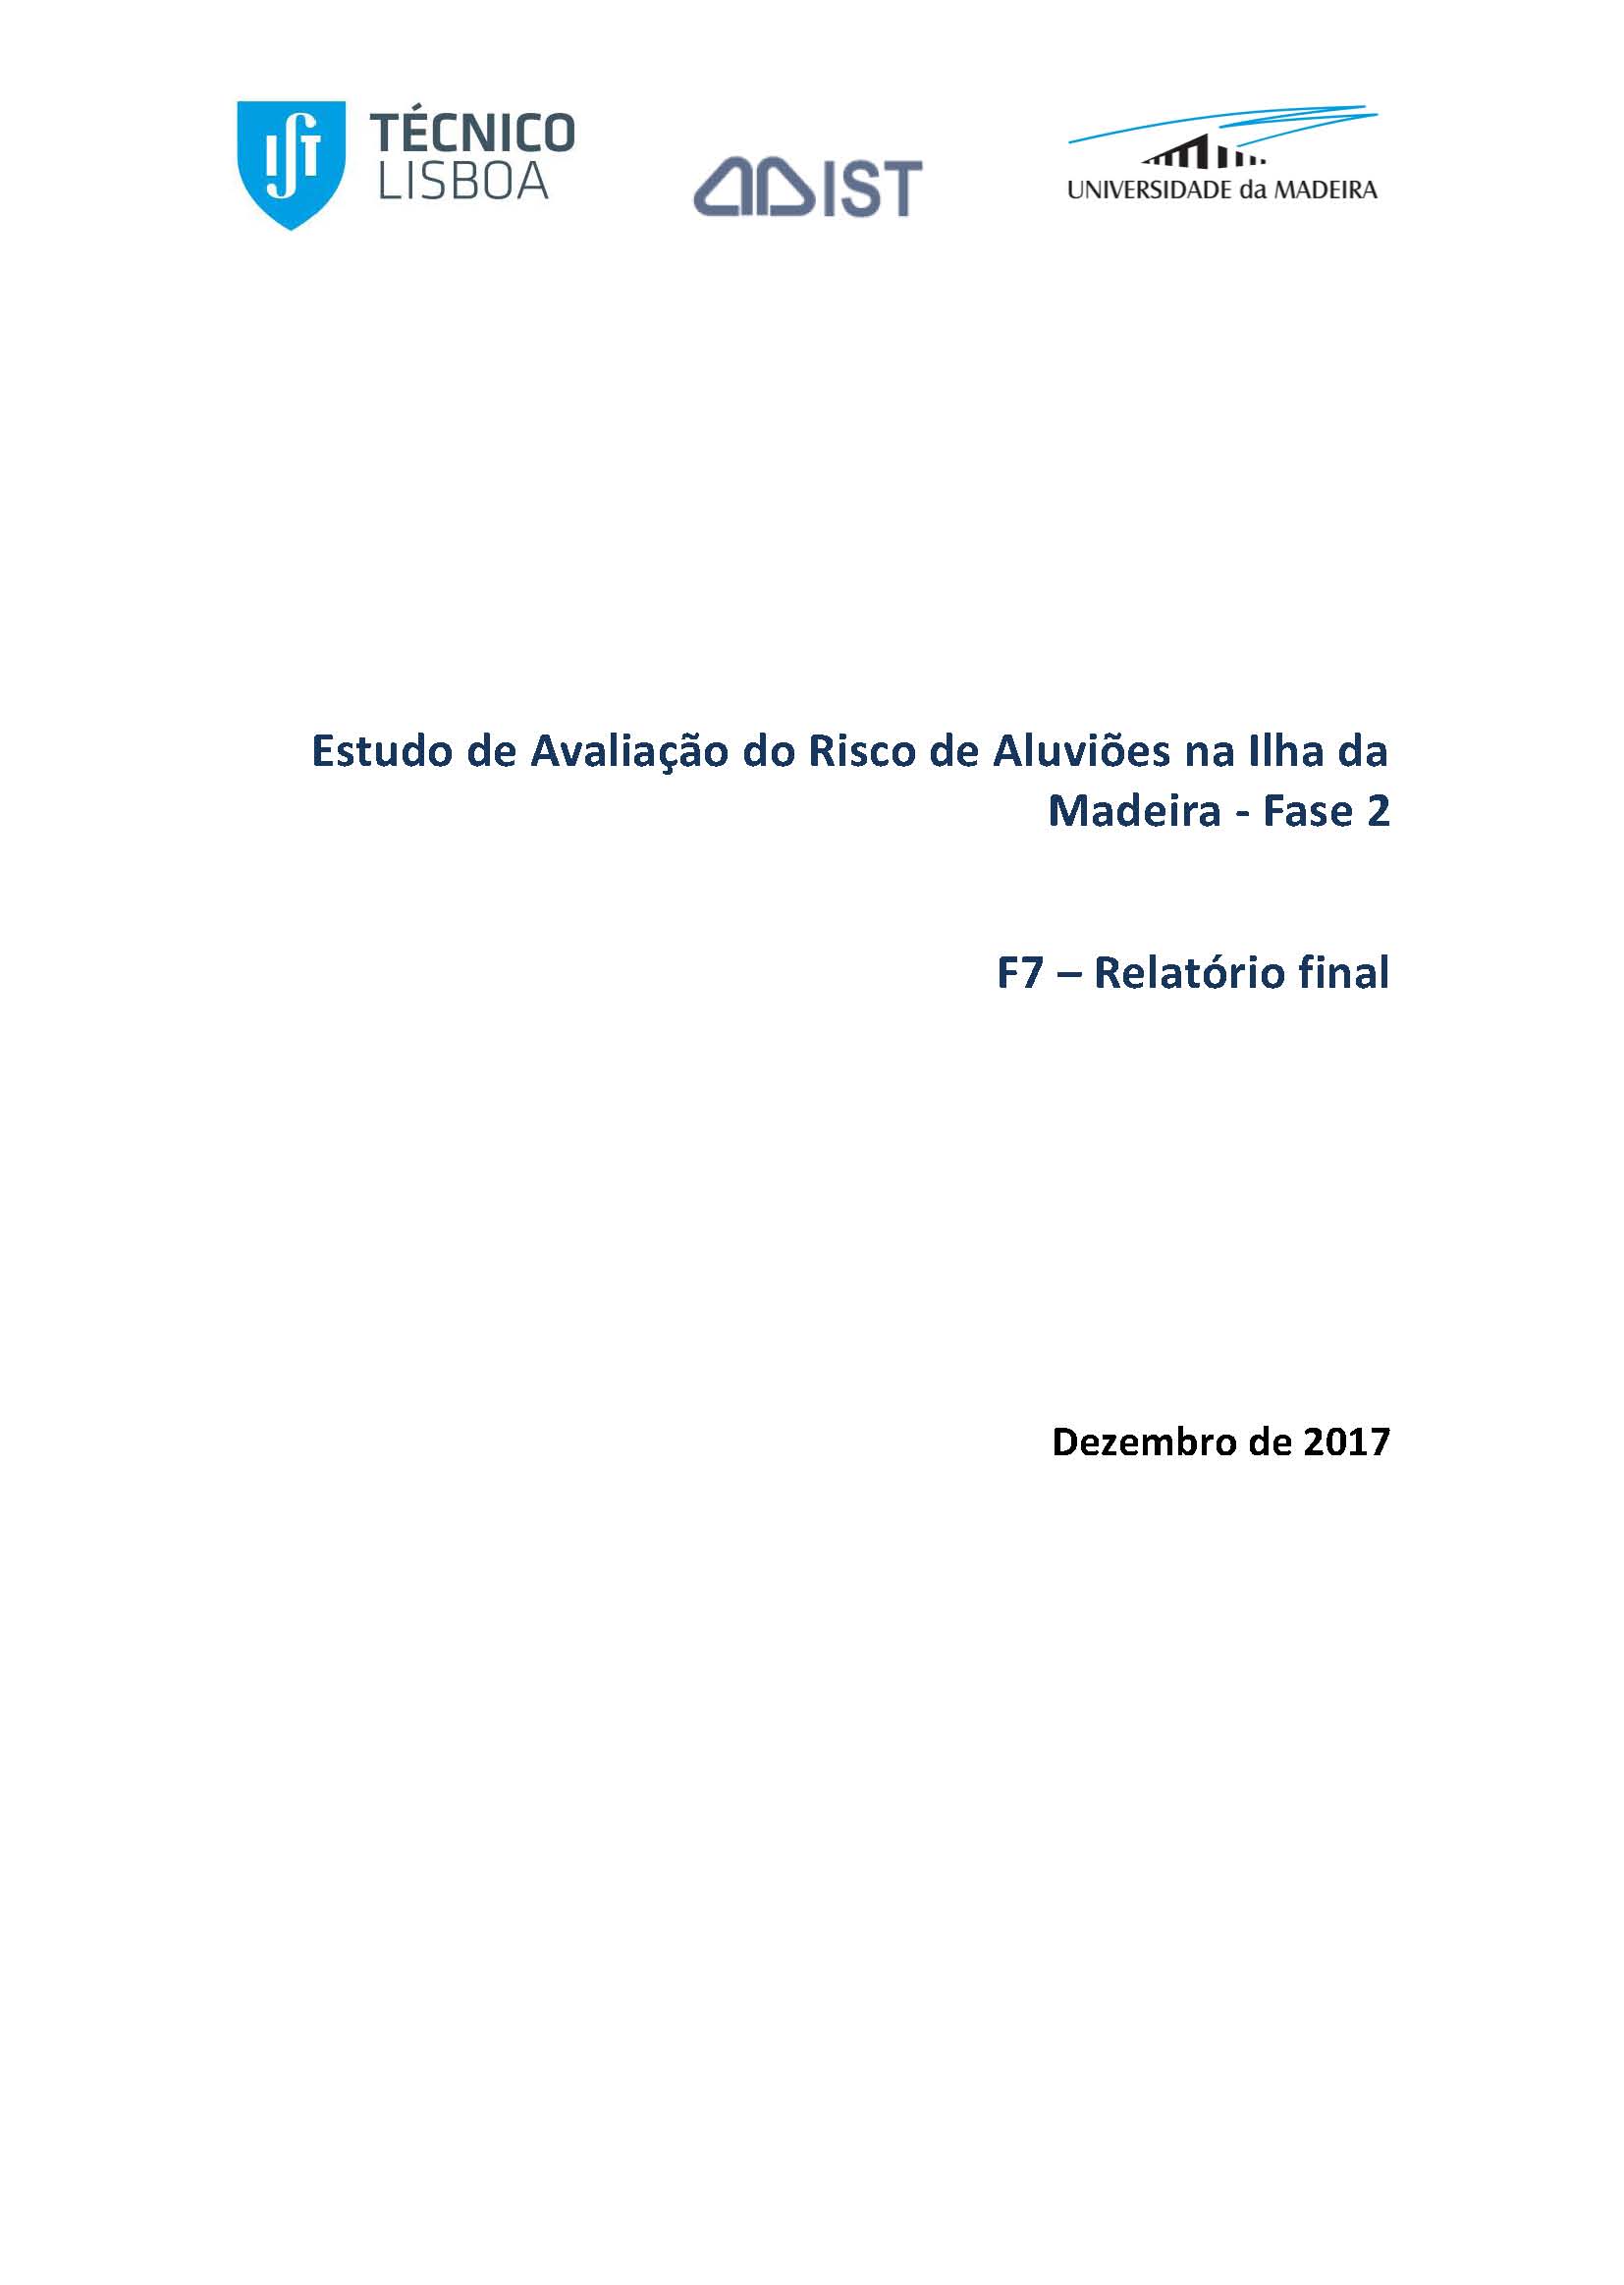 2ª Fase do Estudo de Avaliação do Risco de Aluviões na Ilha da Madeira (EARAM2)